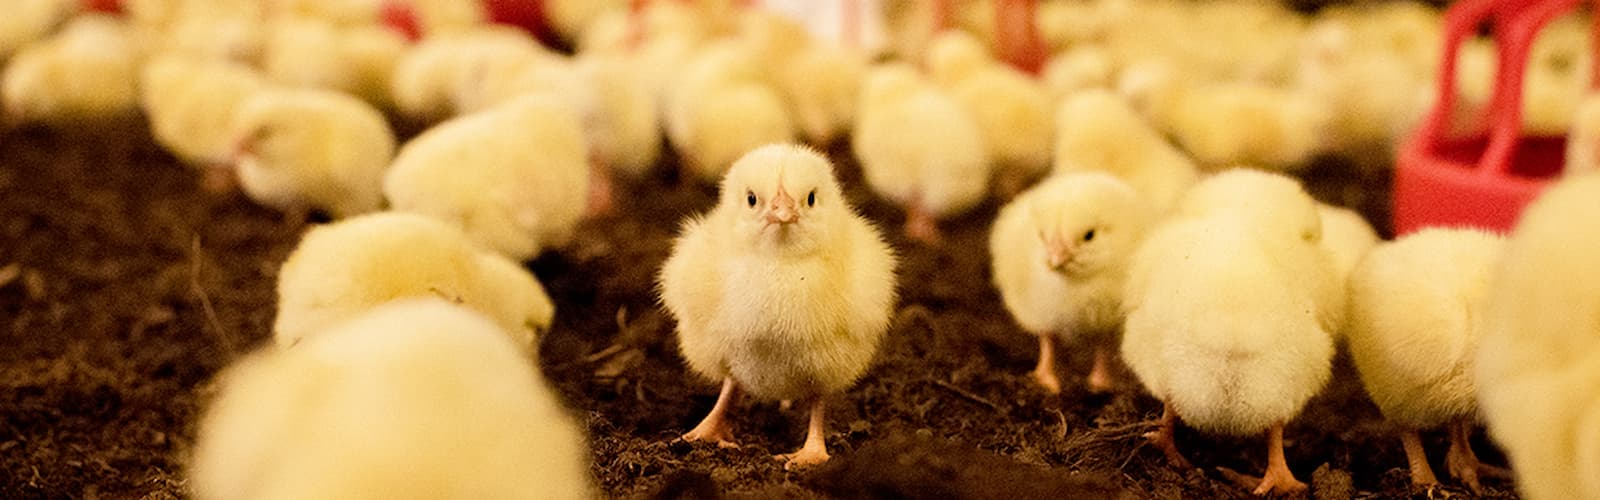 hkscan header responsibility poultryfarming 1200px